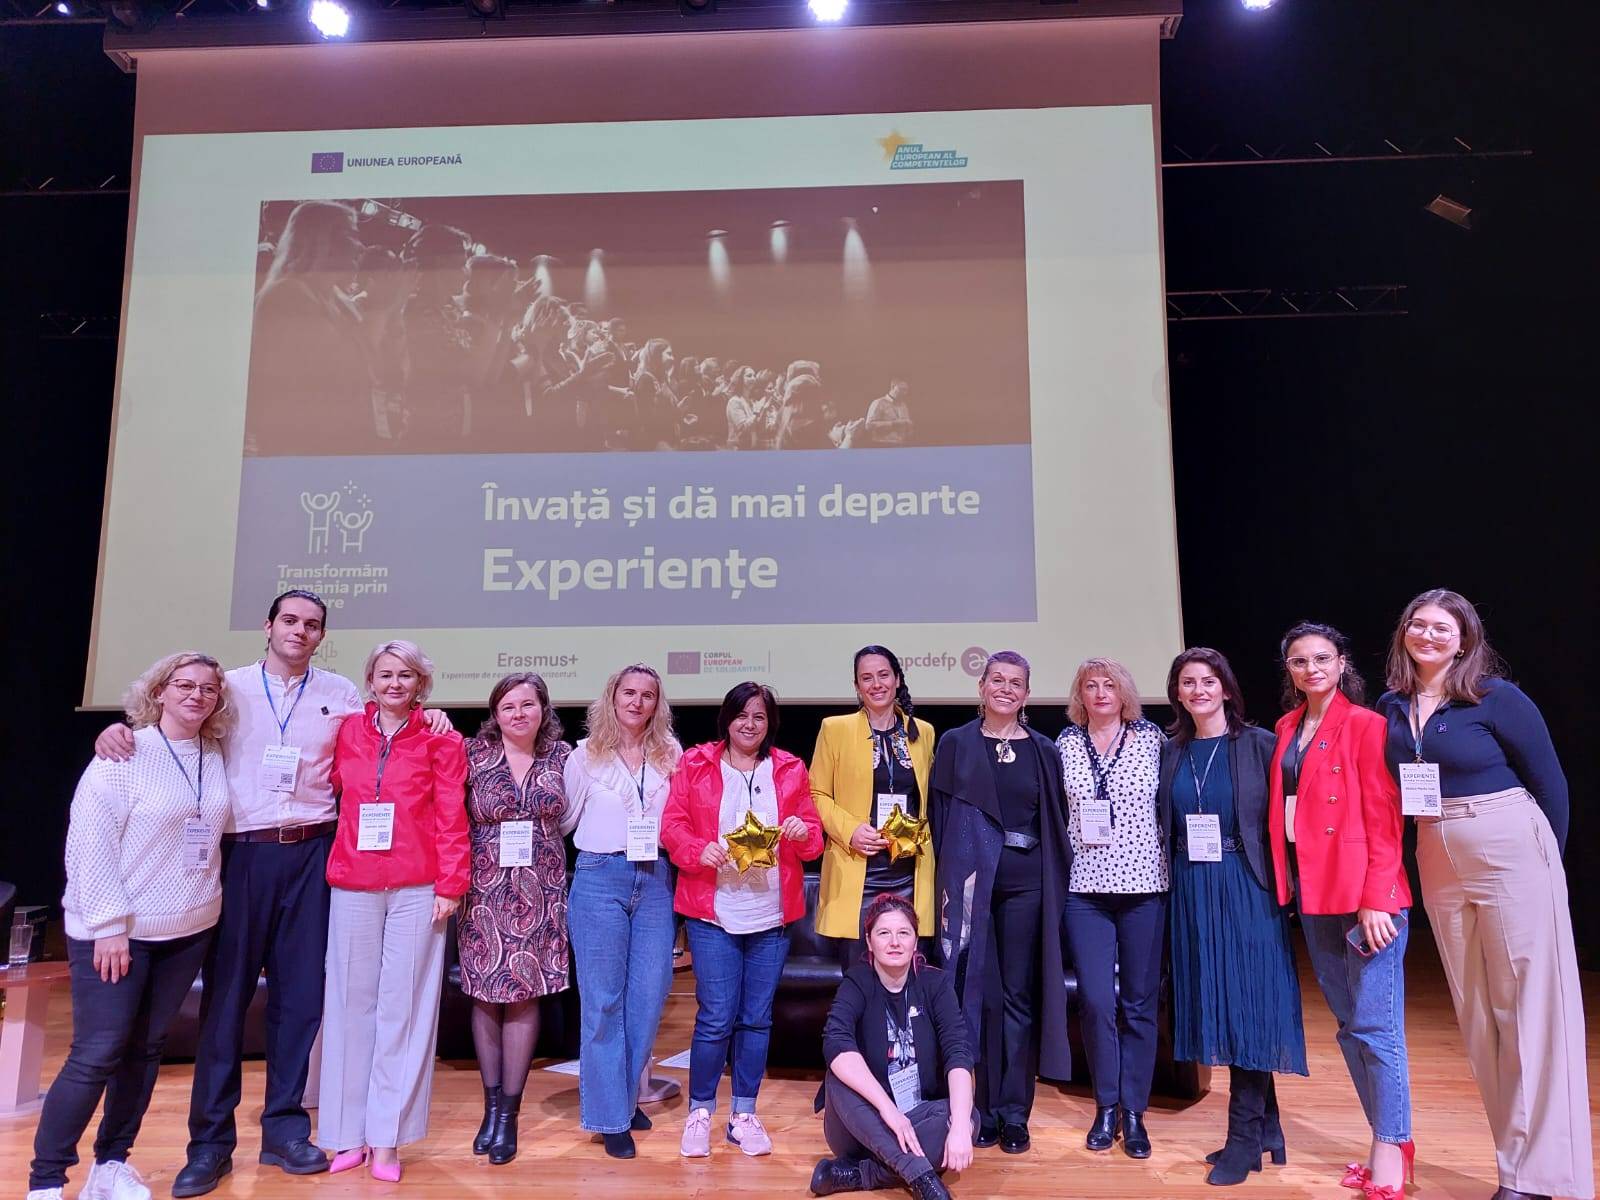 Ambasadorii Erasmus+ România, delegați la Conferința Experiențe și directoarea Monica Calotă (a cincea din dreapta)